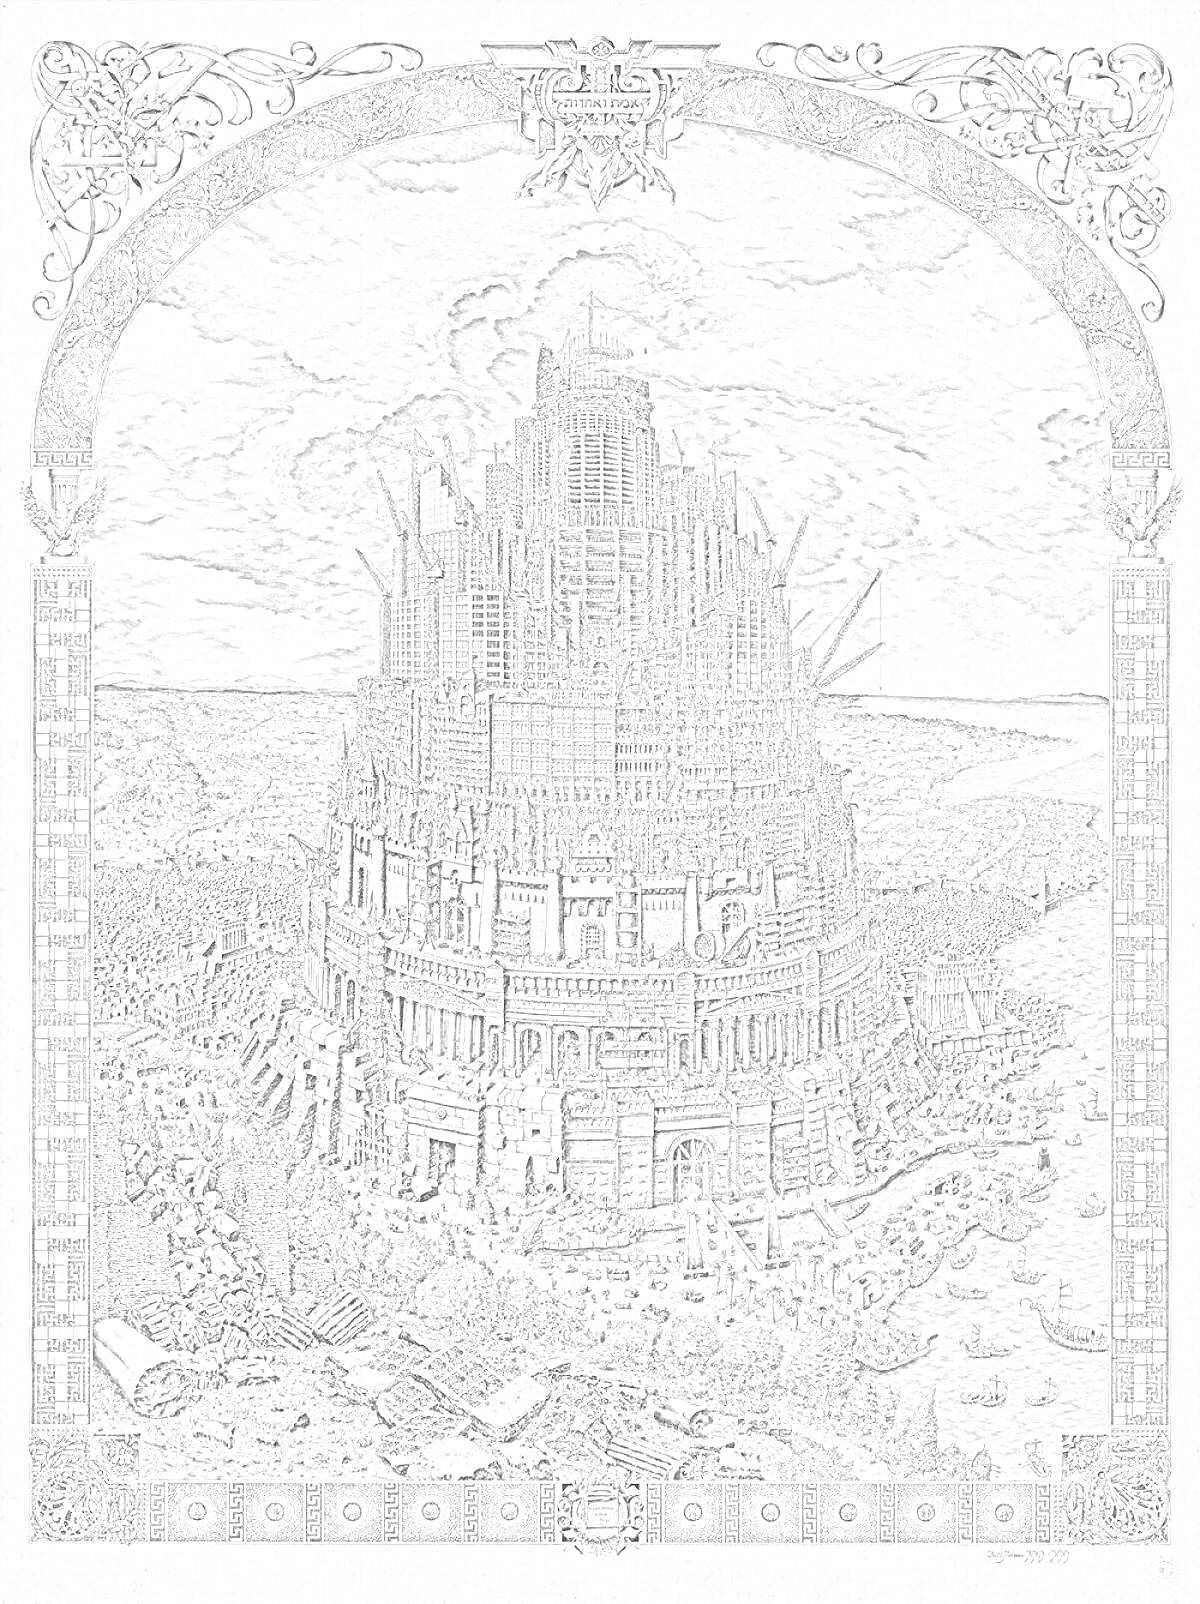 Раскраска Вавилонская башня, старинная постройка с множеством архитектурных элементов и лесов, окрестности с людьми и строительными материалами, декоративная рамка